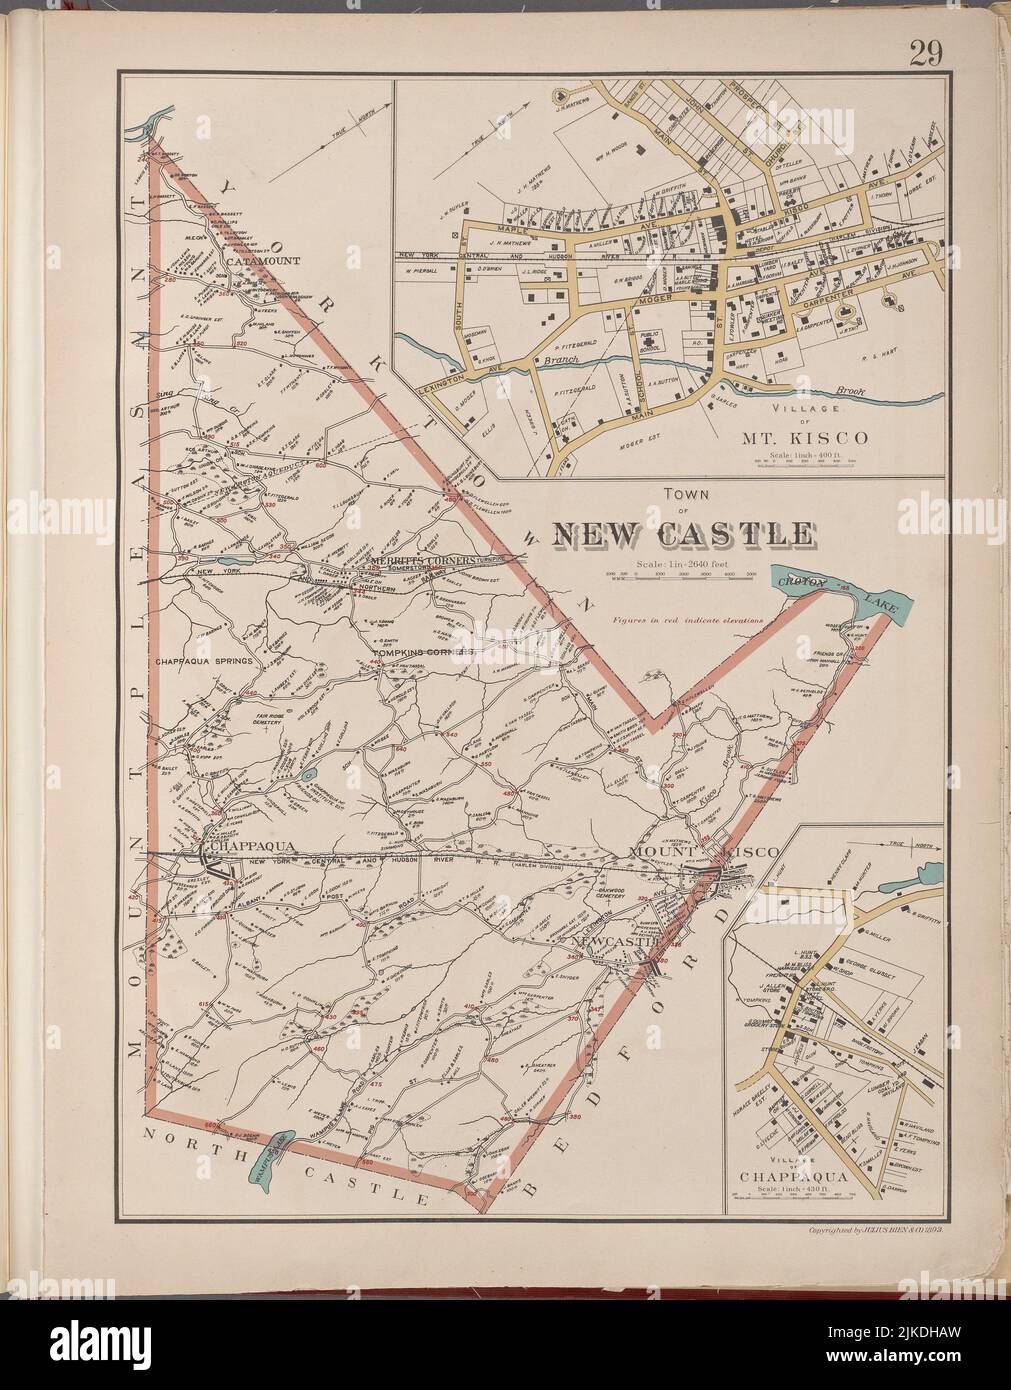 Westchester, Placa N° 29 [Mapa de la ciudad de New Castle, Pueblo de Mt.Kisco, Pueblo de Chappaqua]. Bien, Joseph R. (Editor). Atlas de los Unidos Foto de stock